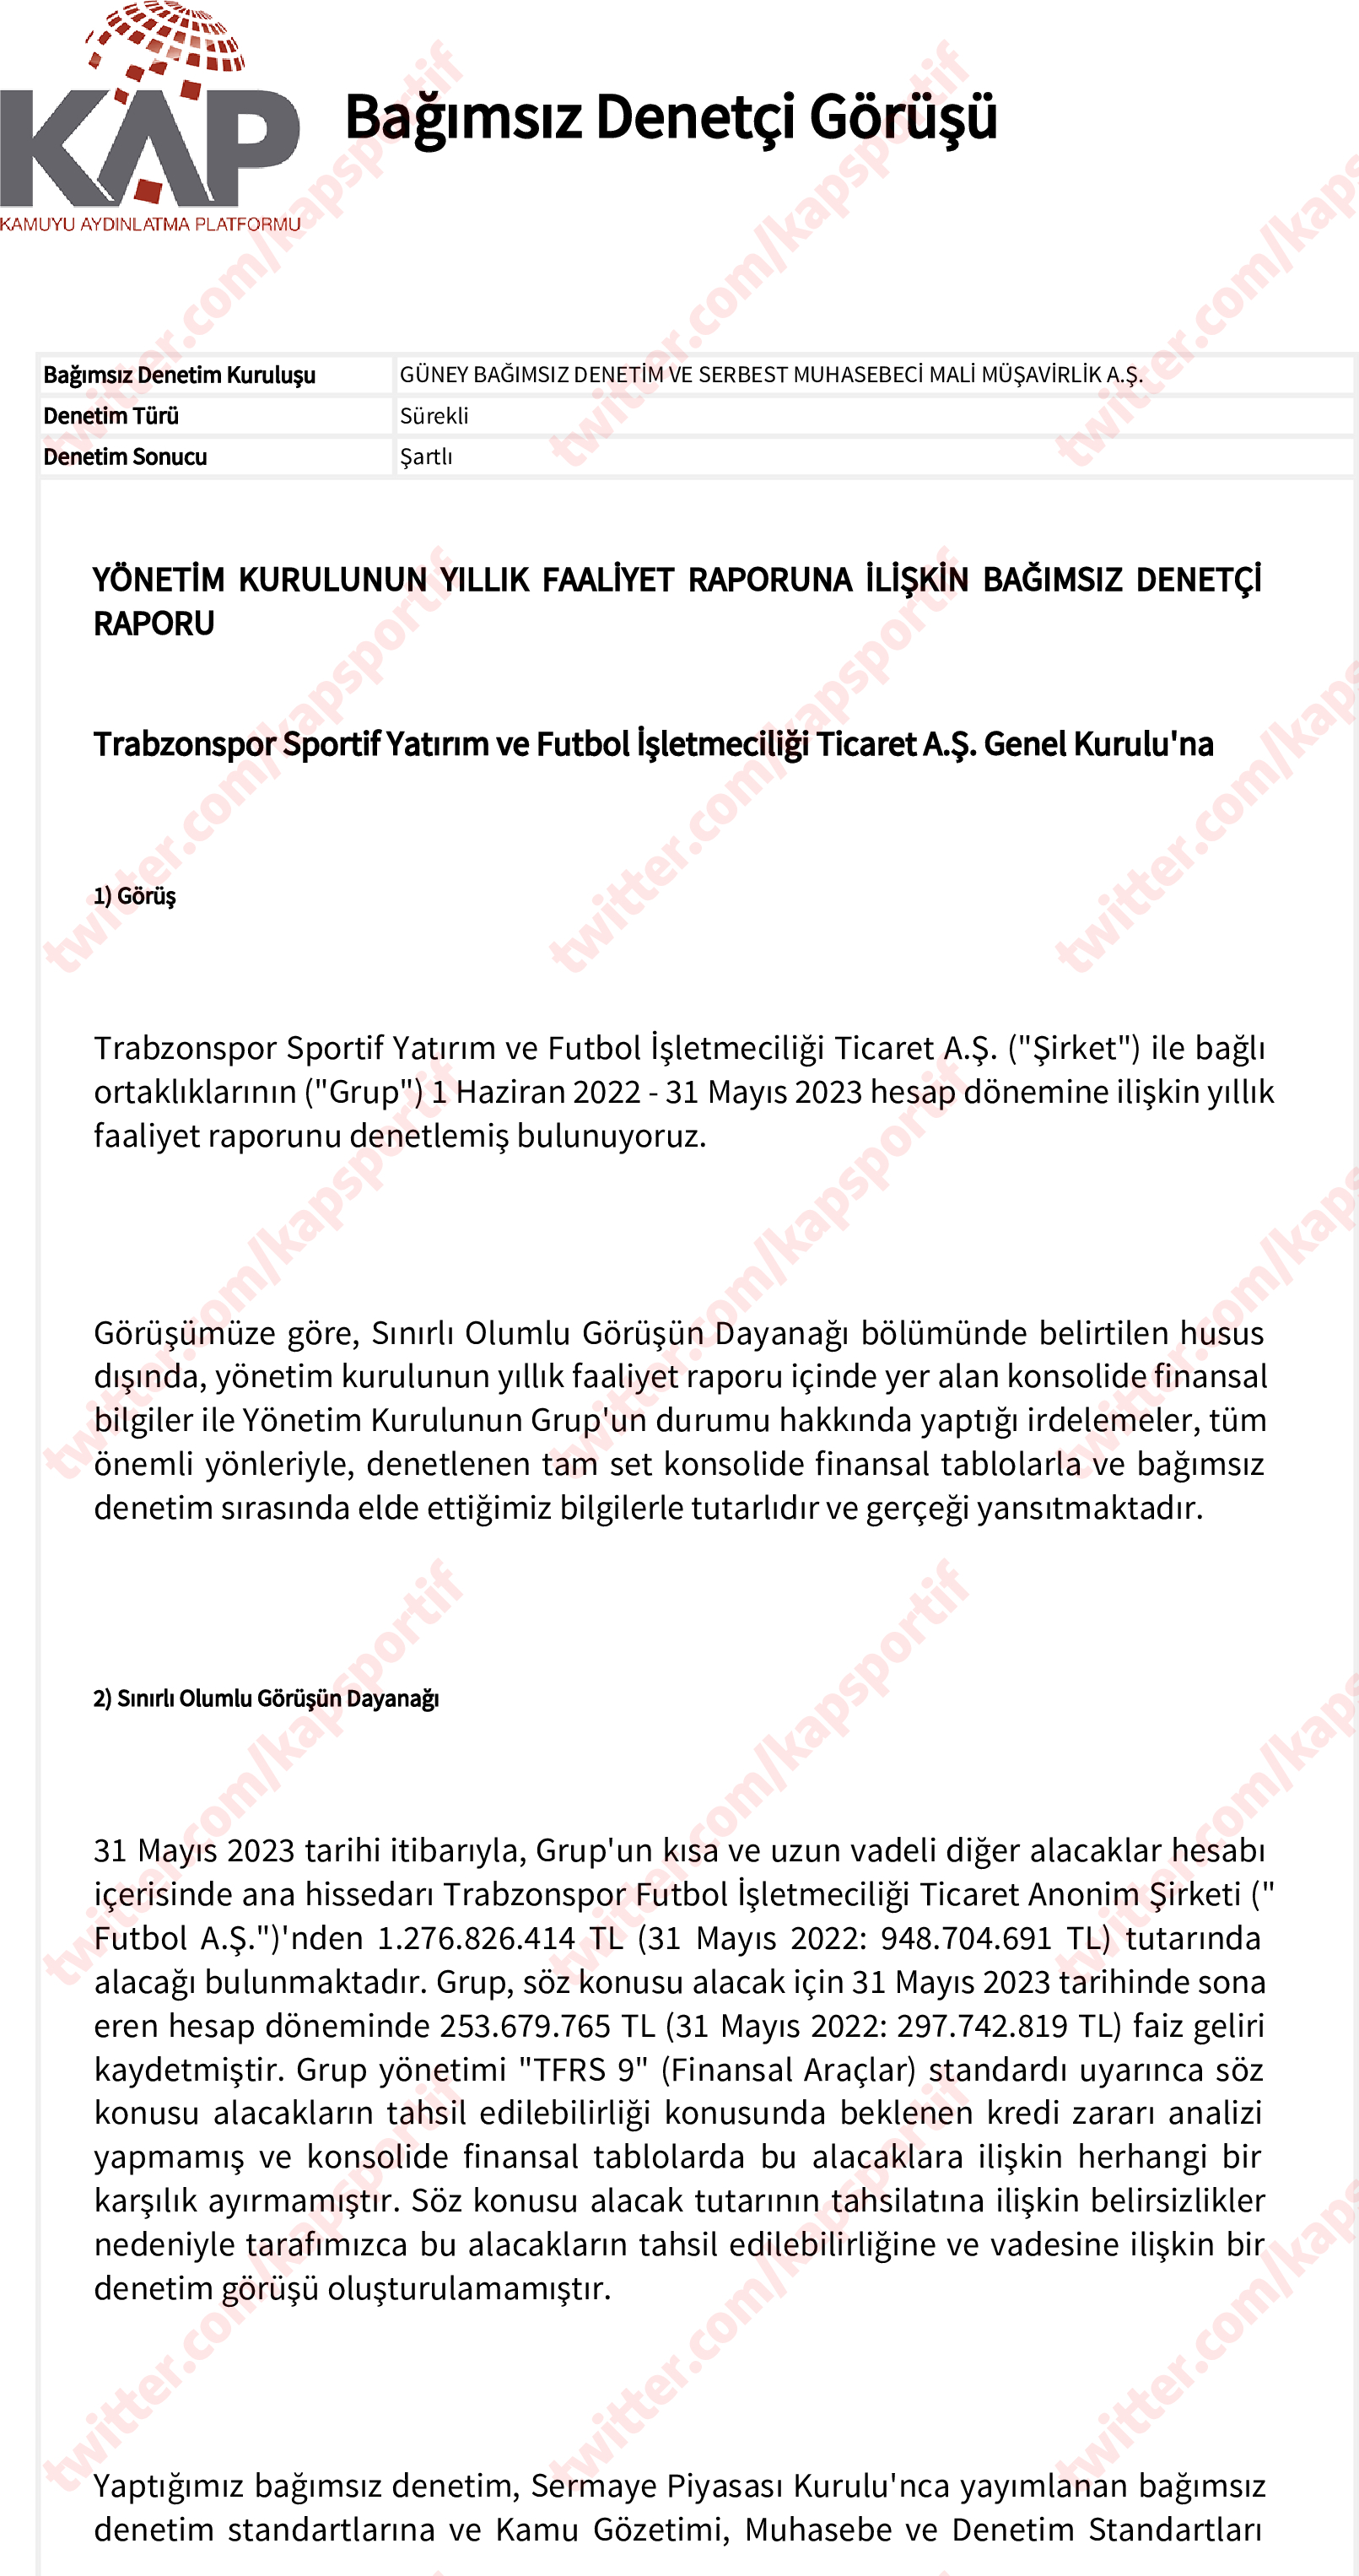 Trabzonspor’dan KAP geldi! Finansal raporlar ve daha fazlası